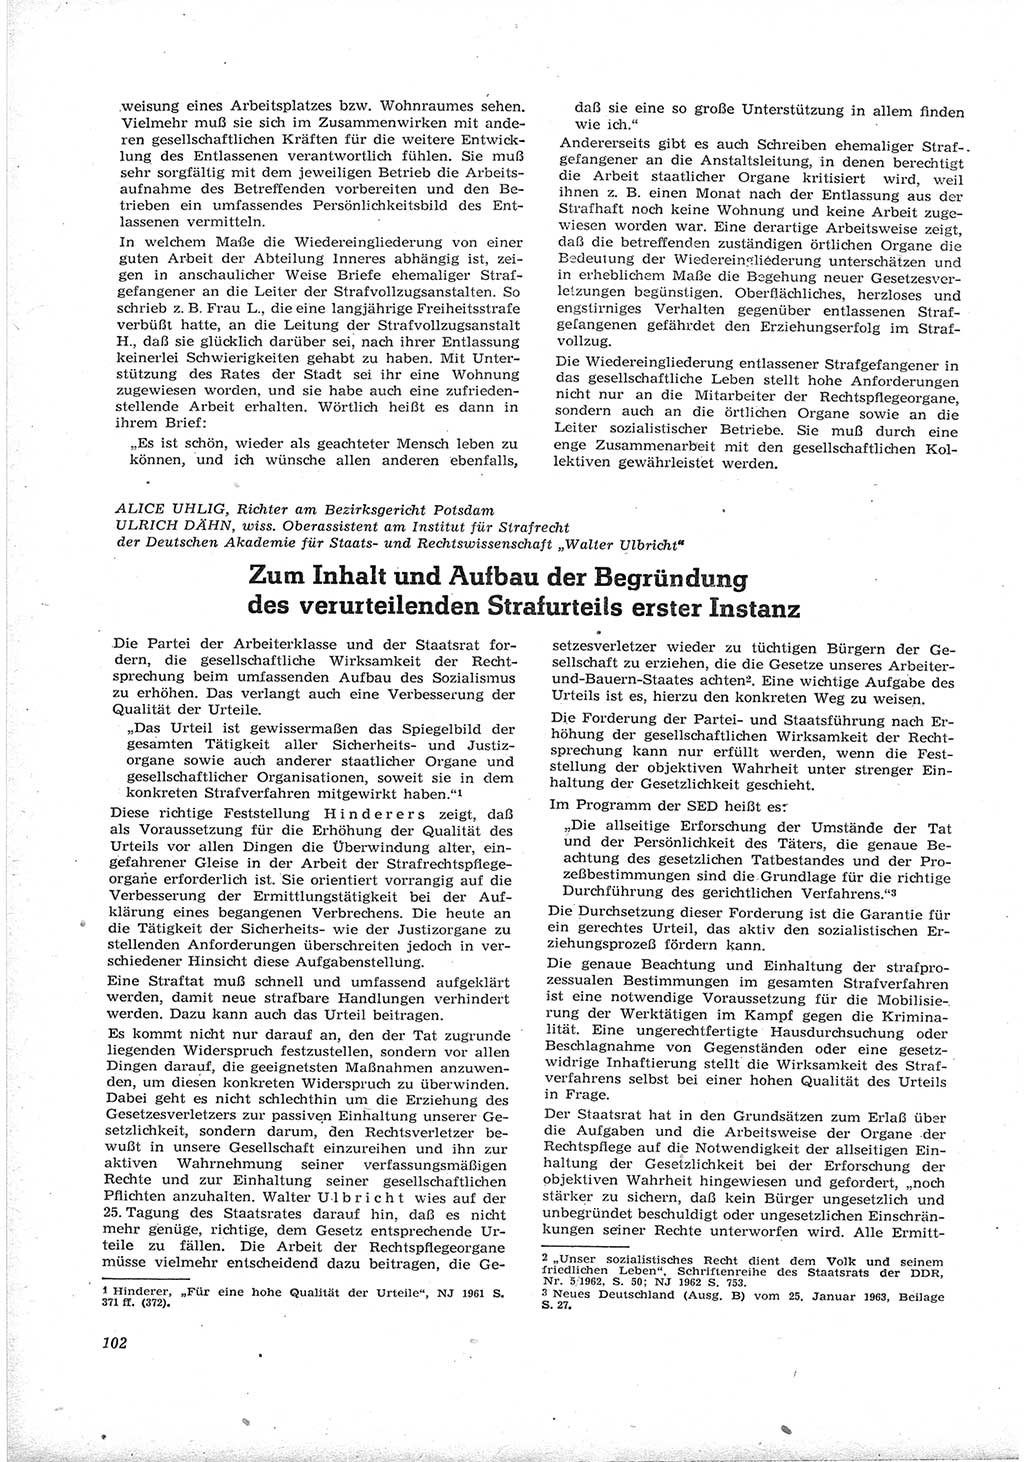 Neue Justiz (NJ), Zeitschrift für Recht und Rechtswissenschaft [Deutsche Demokratische Republik (DDR)], 17. Jahrgang 1963, Seite 102 (NJ DDR 1963, S. 102)